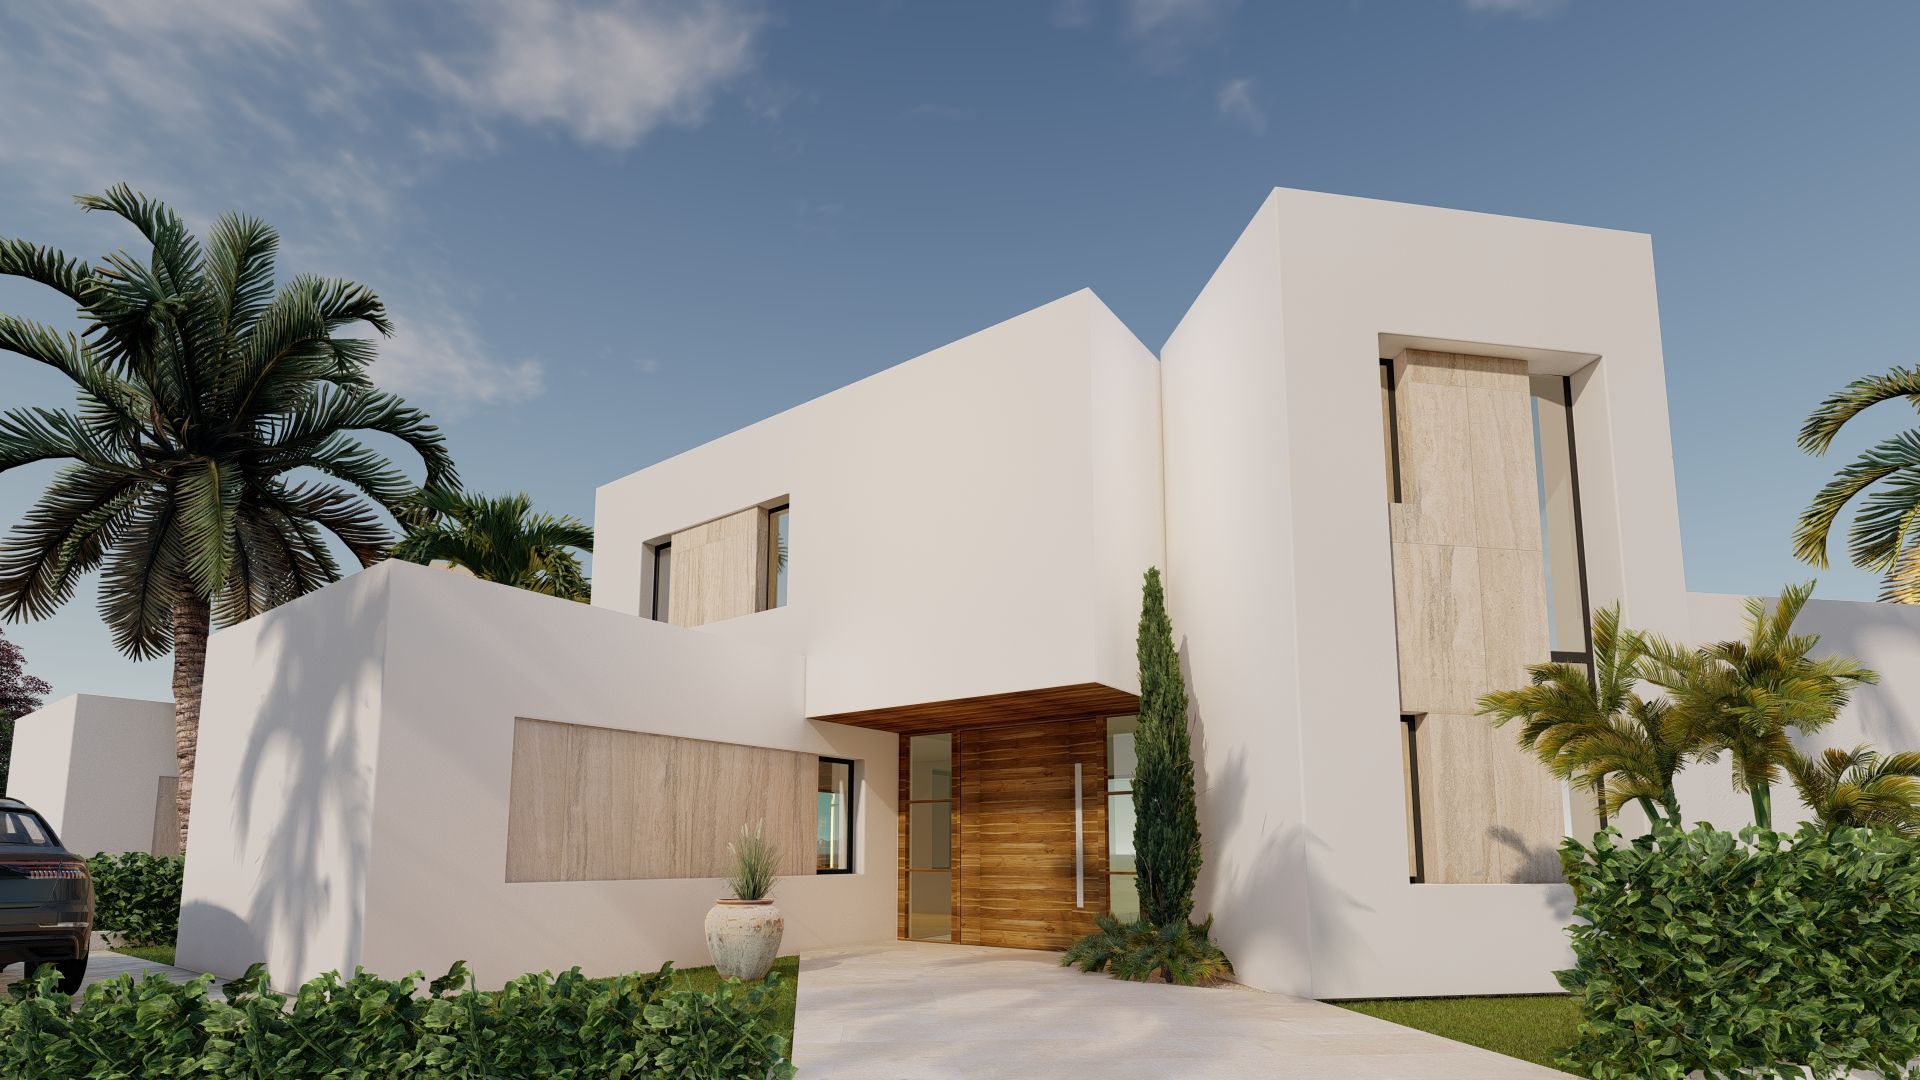 3 bedroom house / villa for sale in Estepona, Costa del Sol